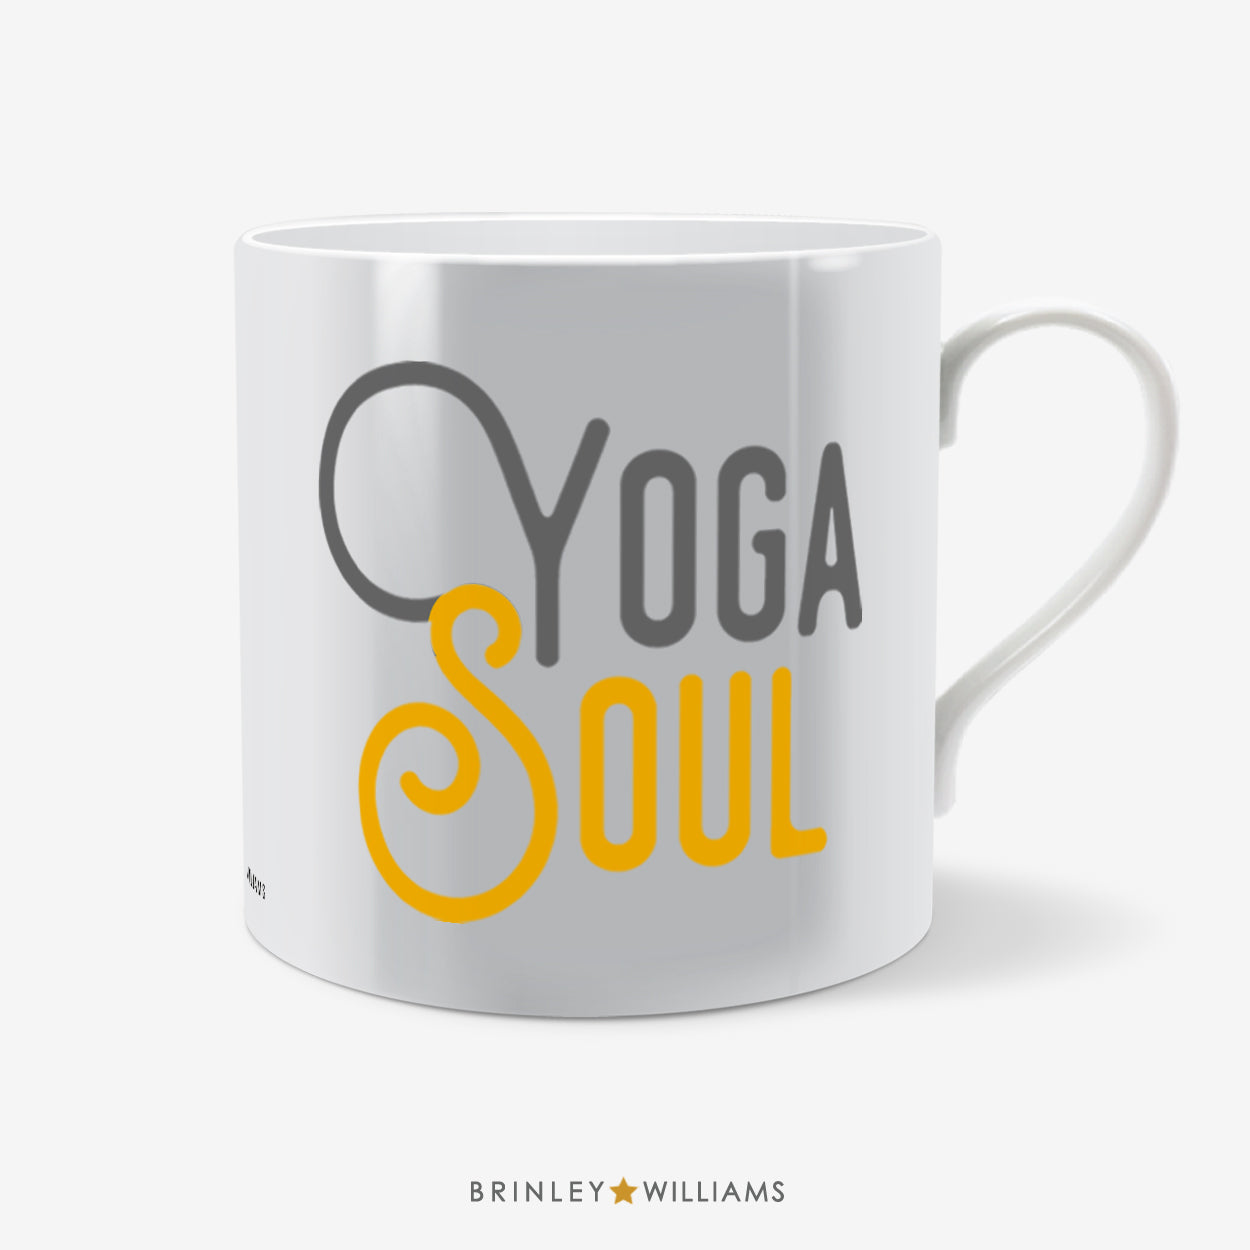 Yoga Soul Mug - Yellow